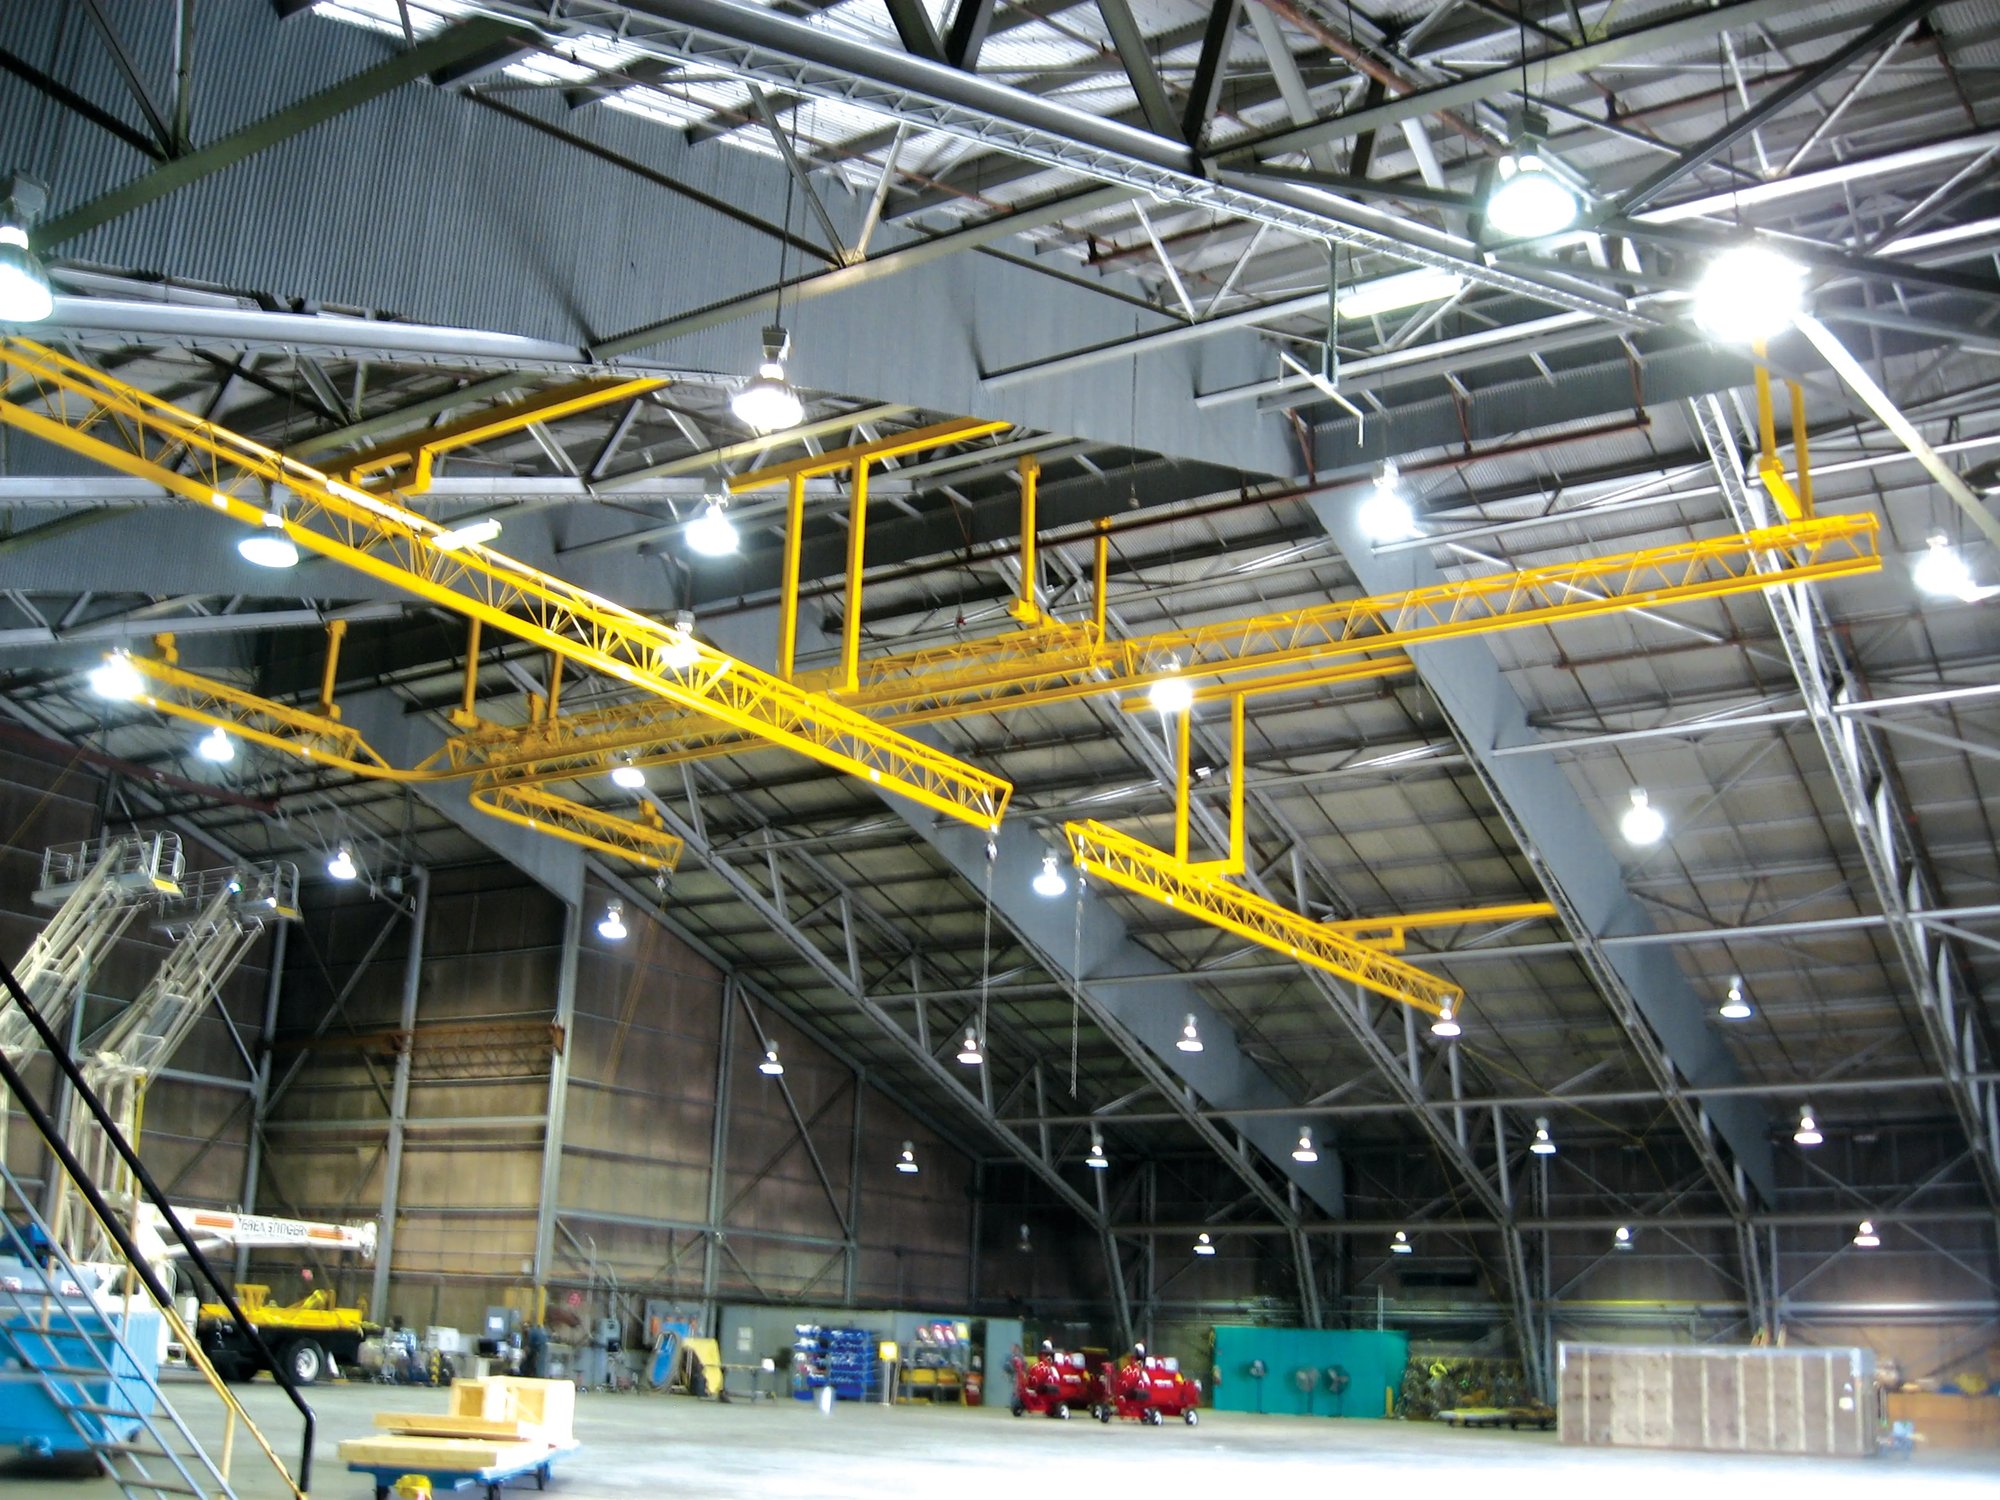 Aircraft hangar